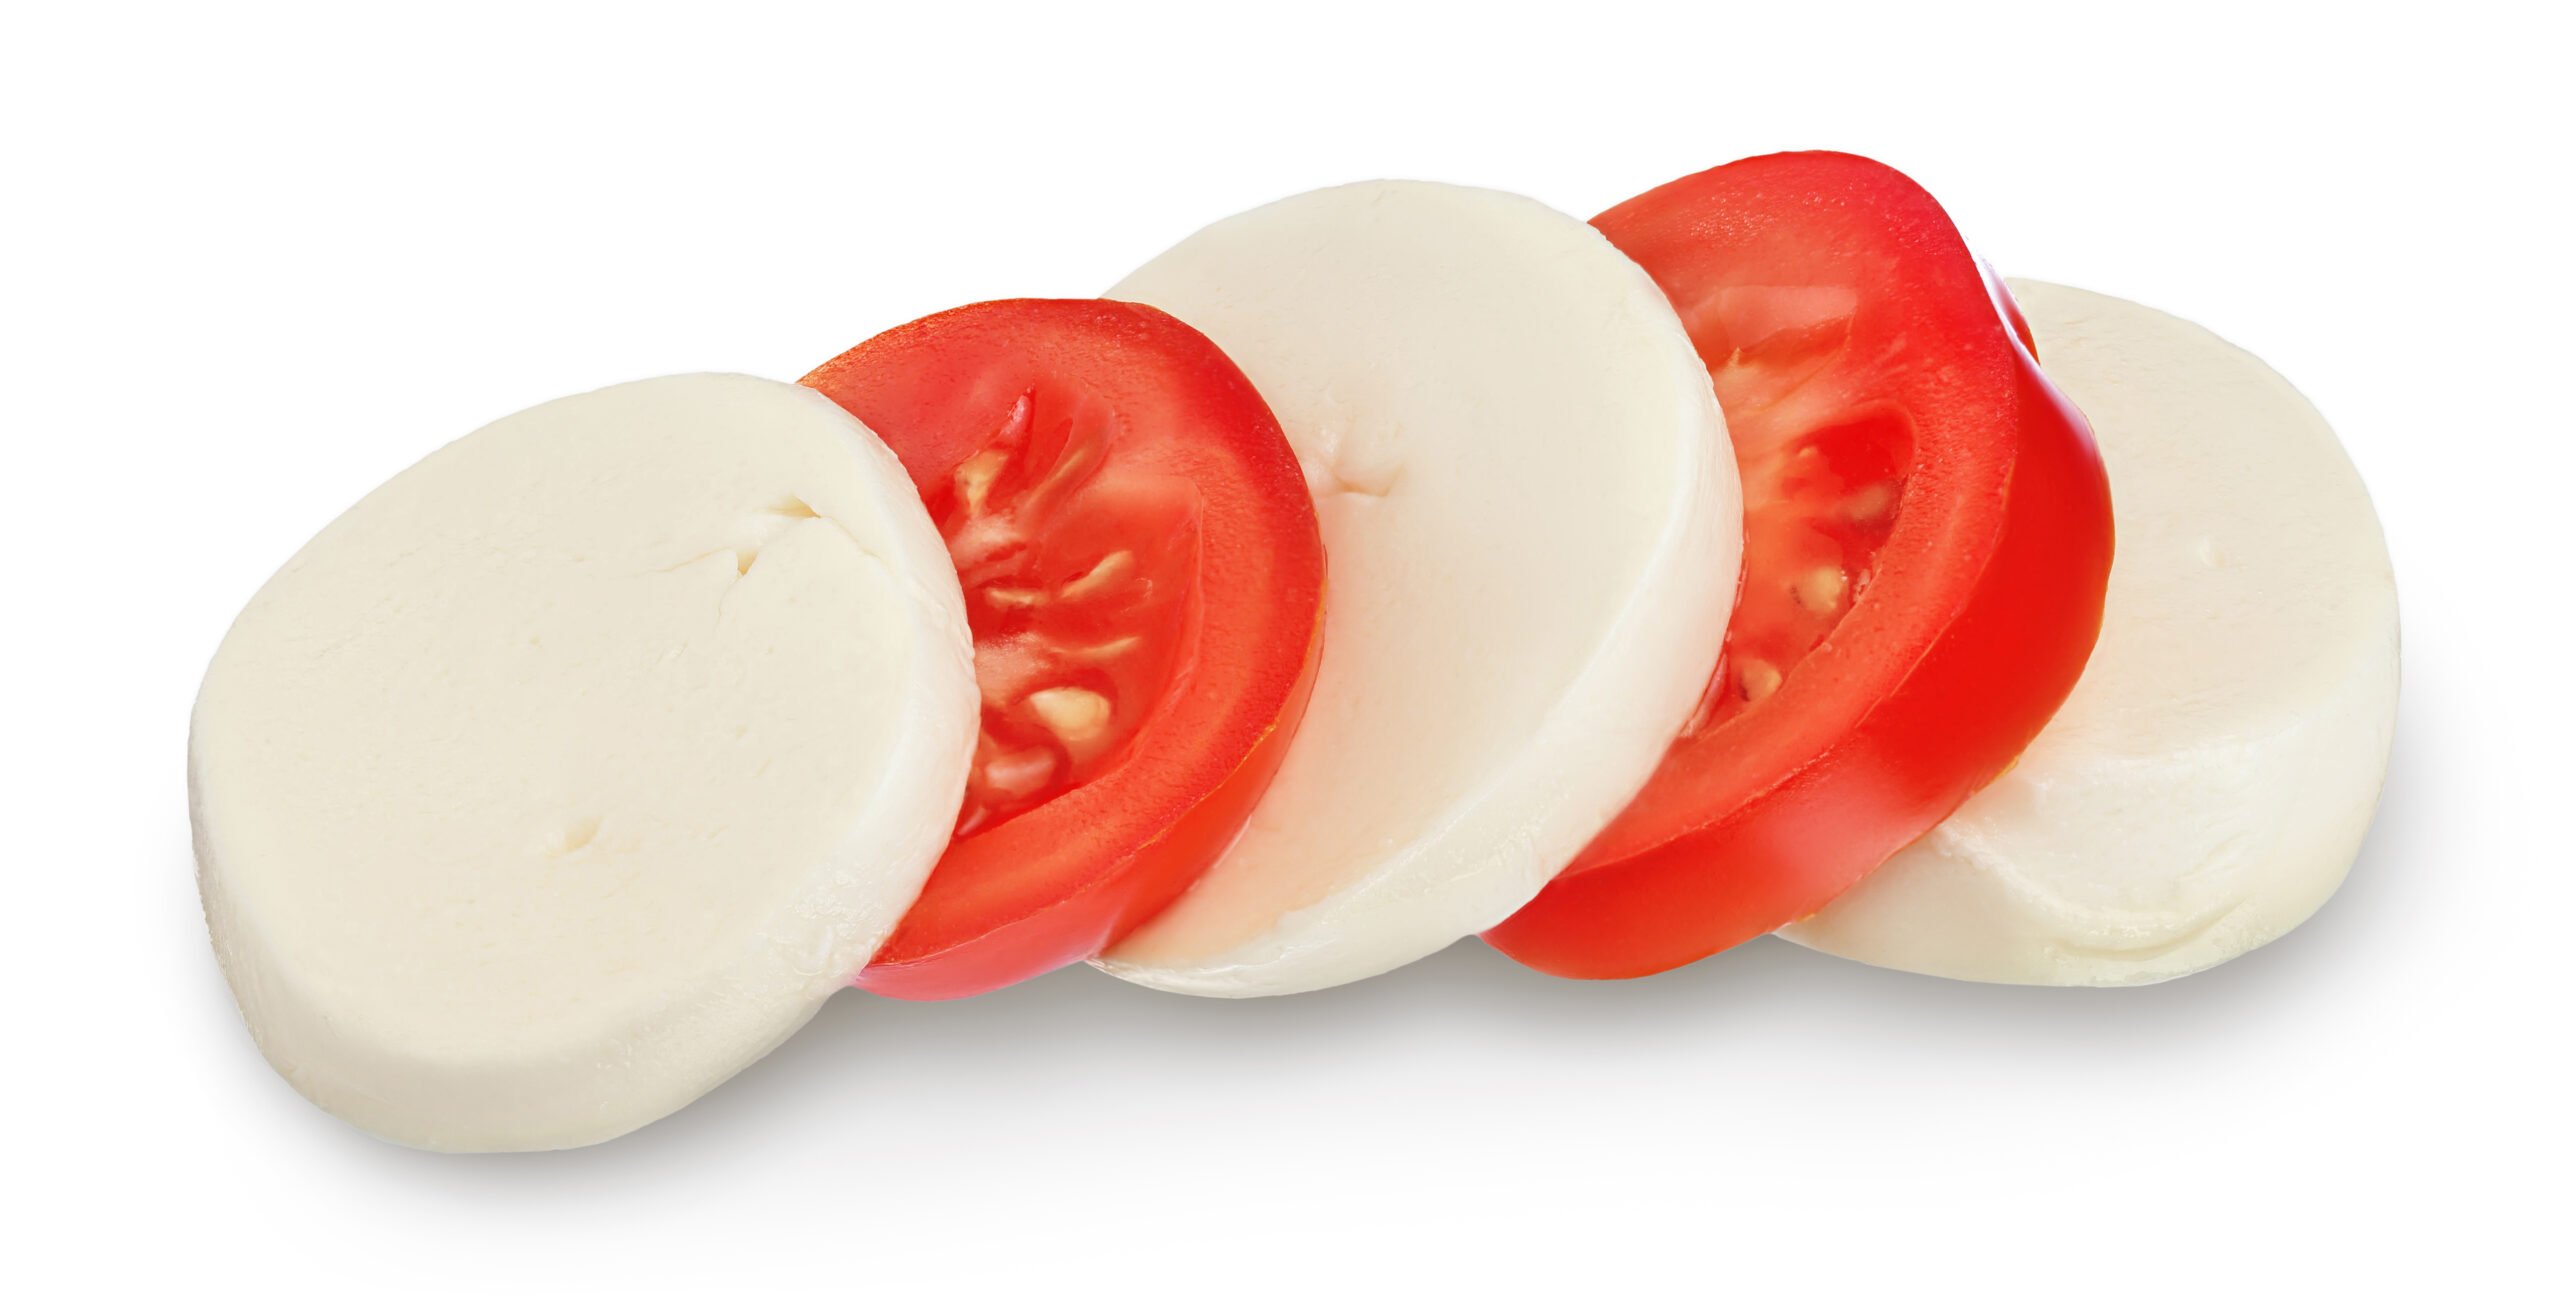 tomato and mozzarella slices for caprese